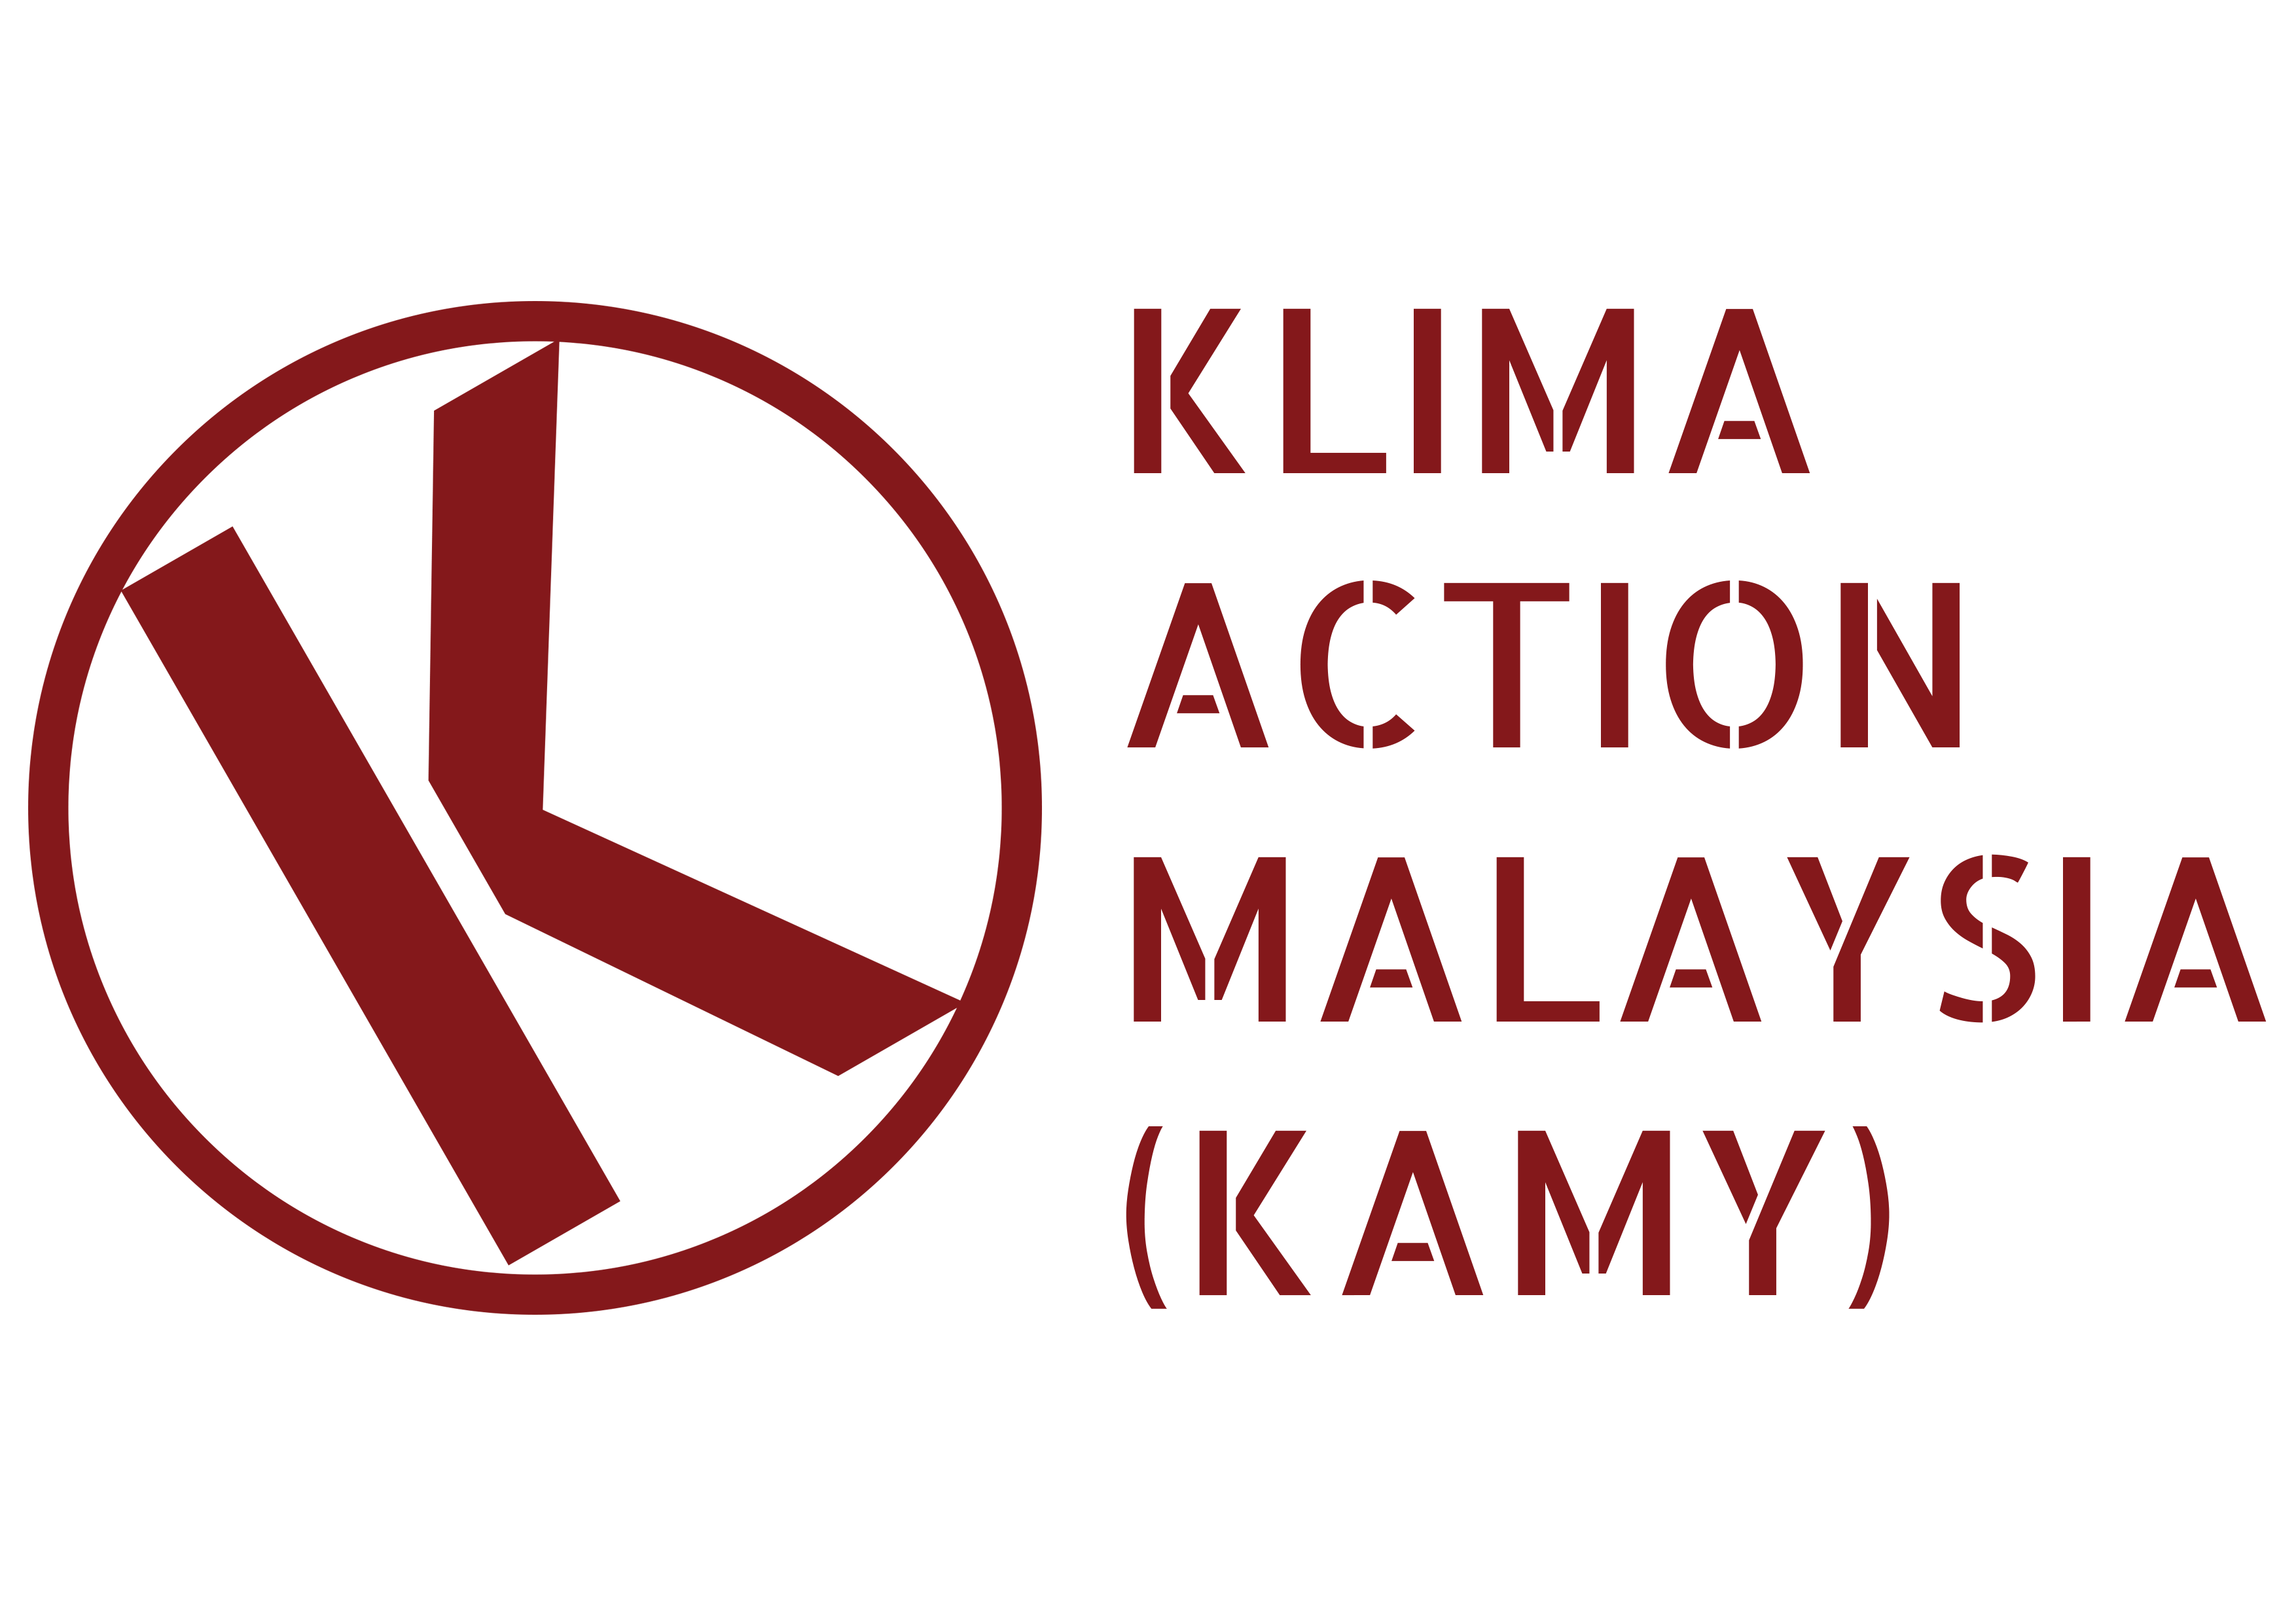 KAMY logo